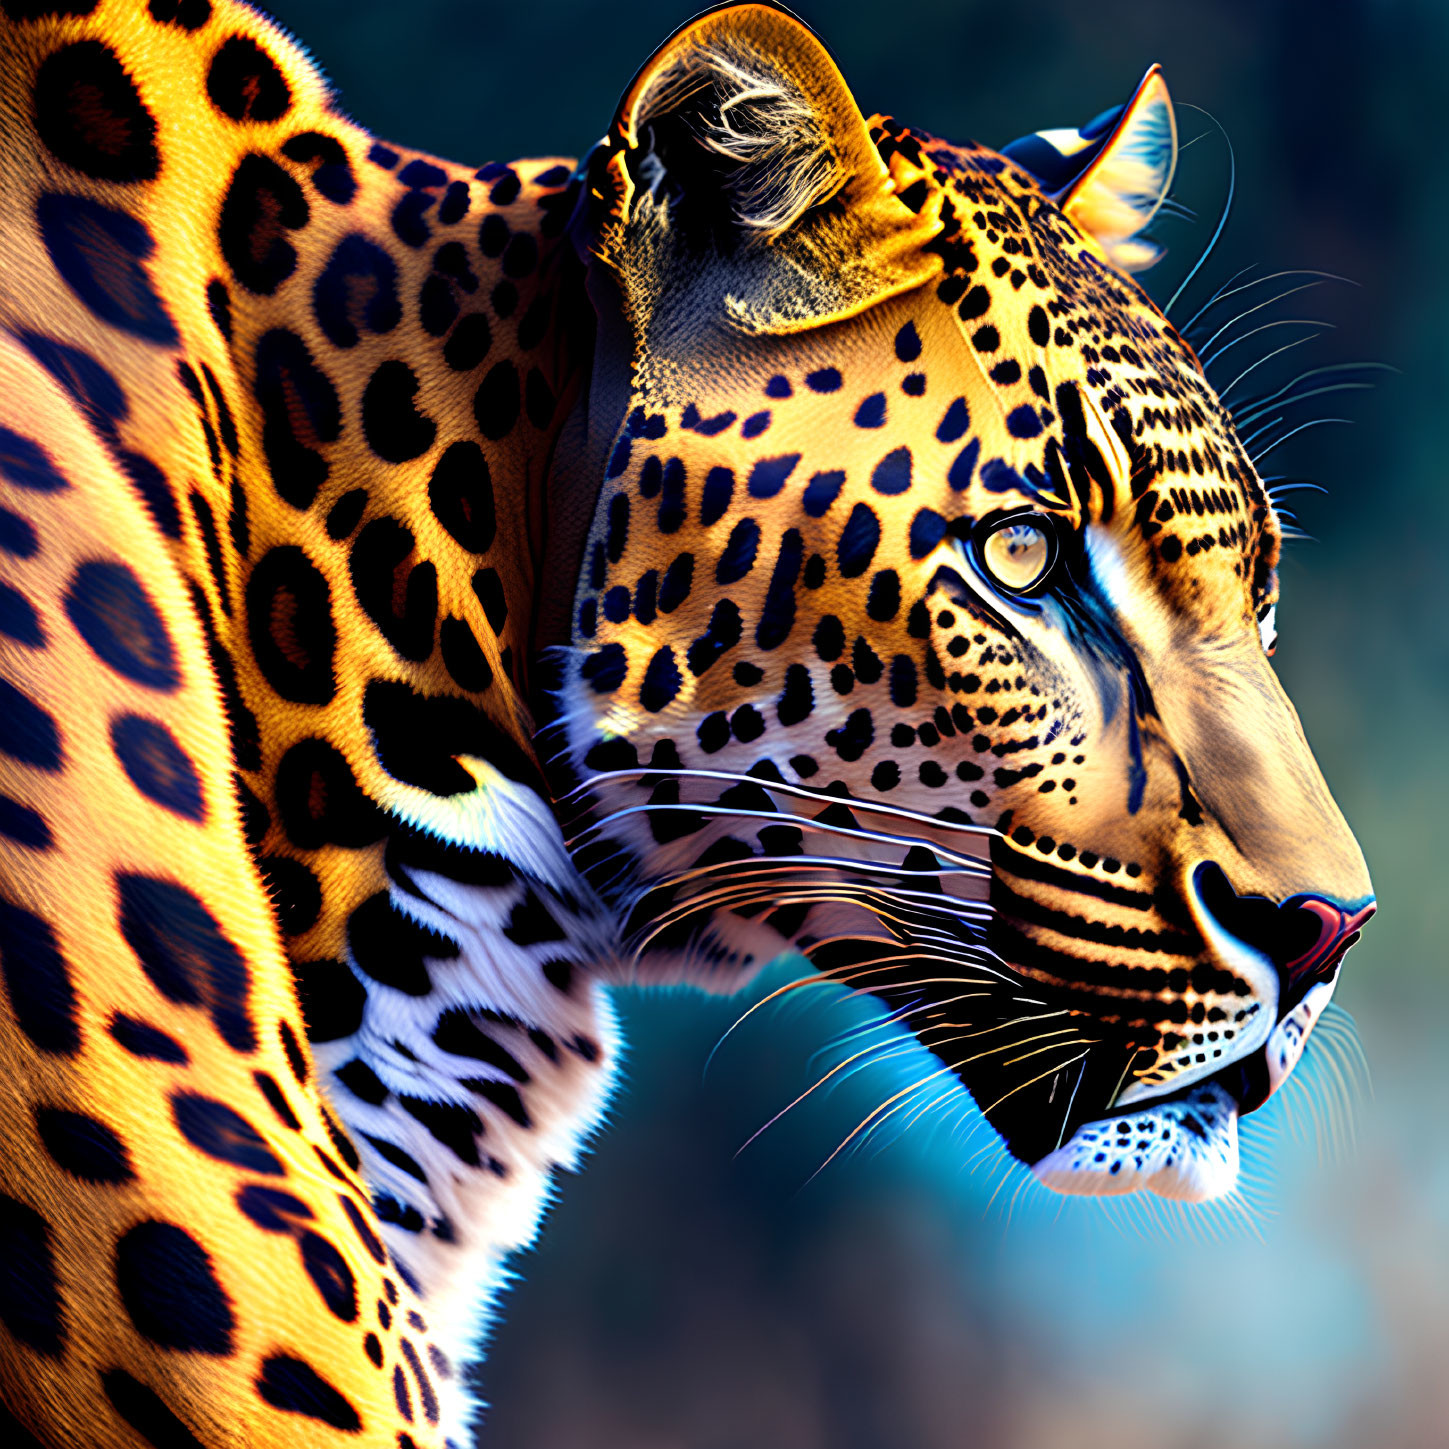 Close-up of jaguar with orange fur and black rosettes on blue background